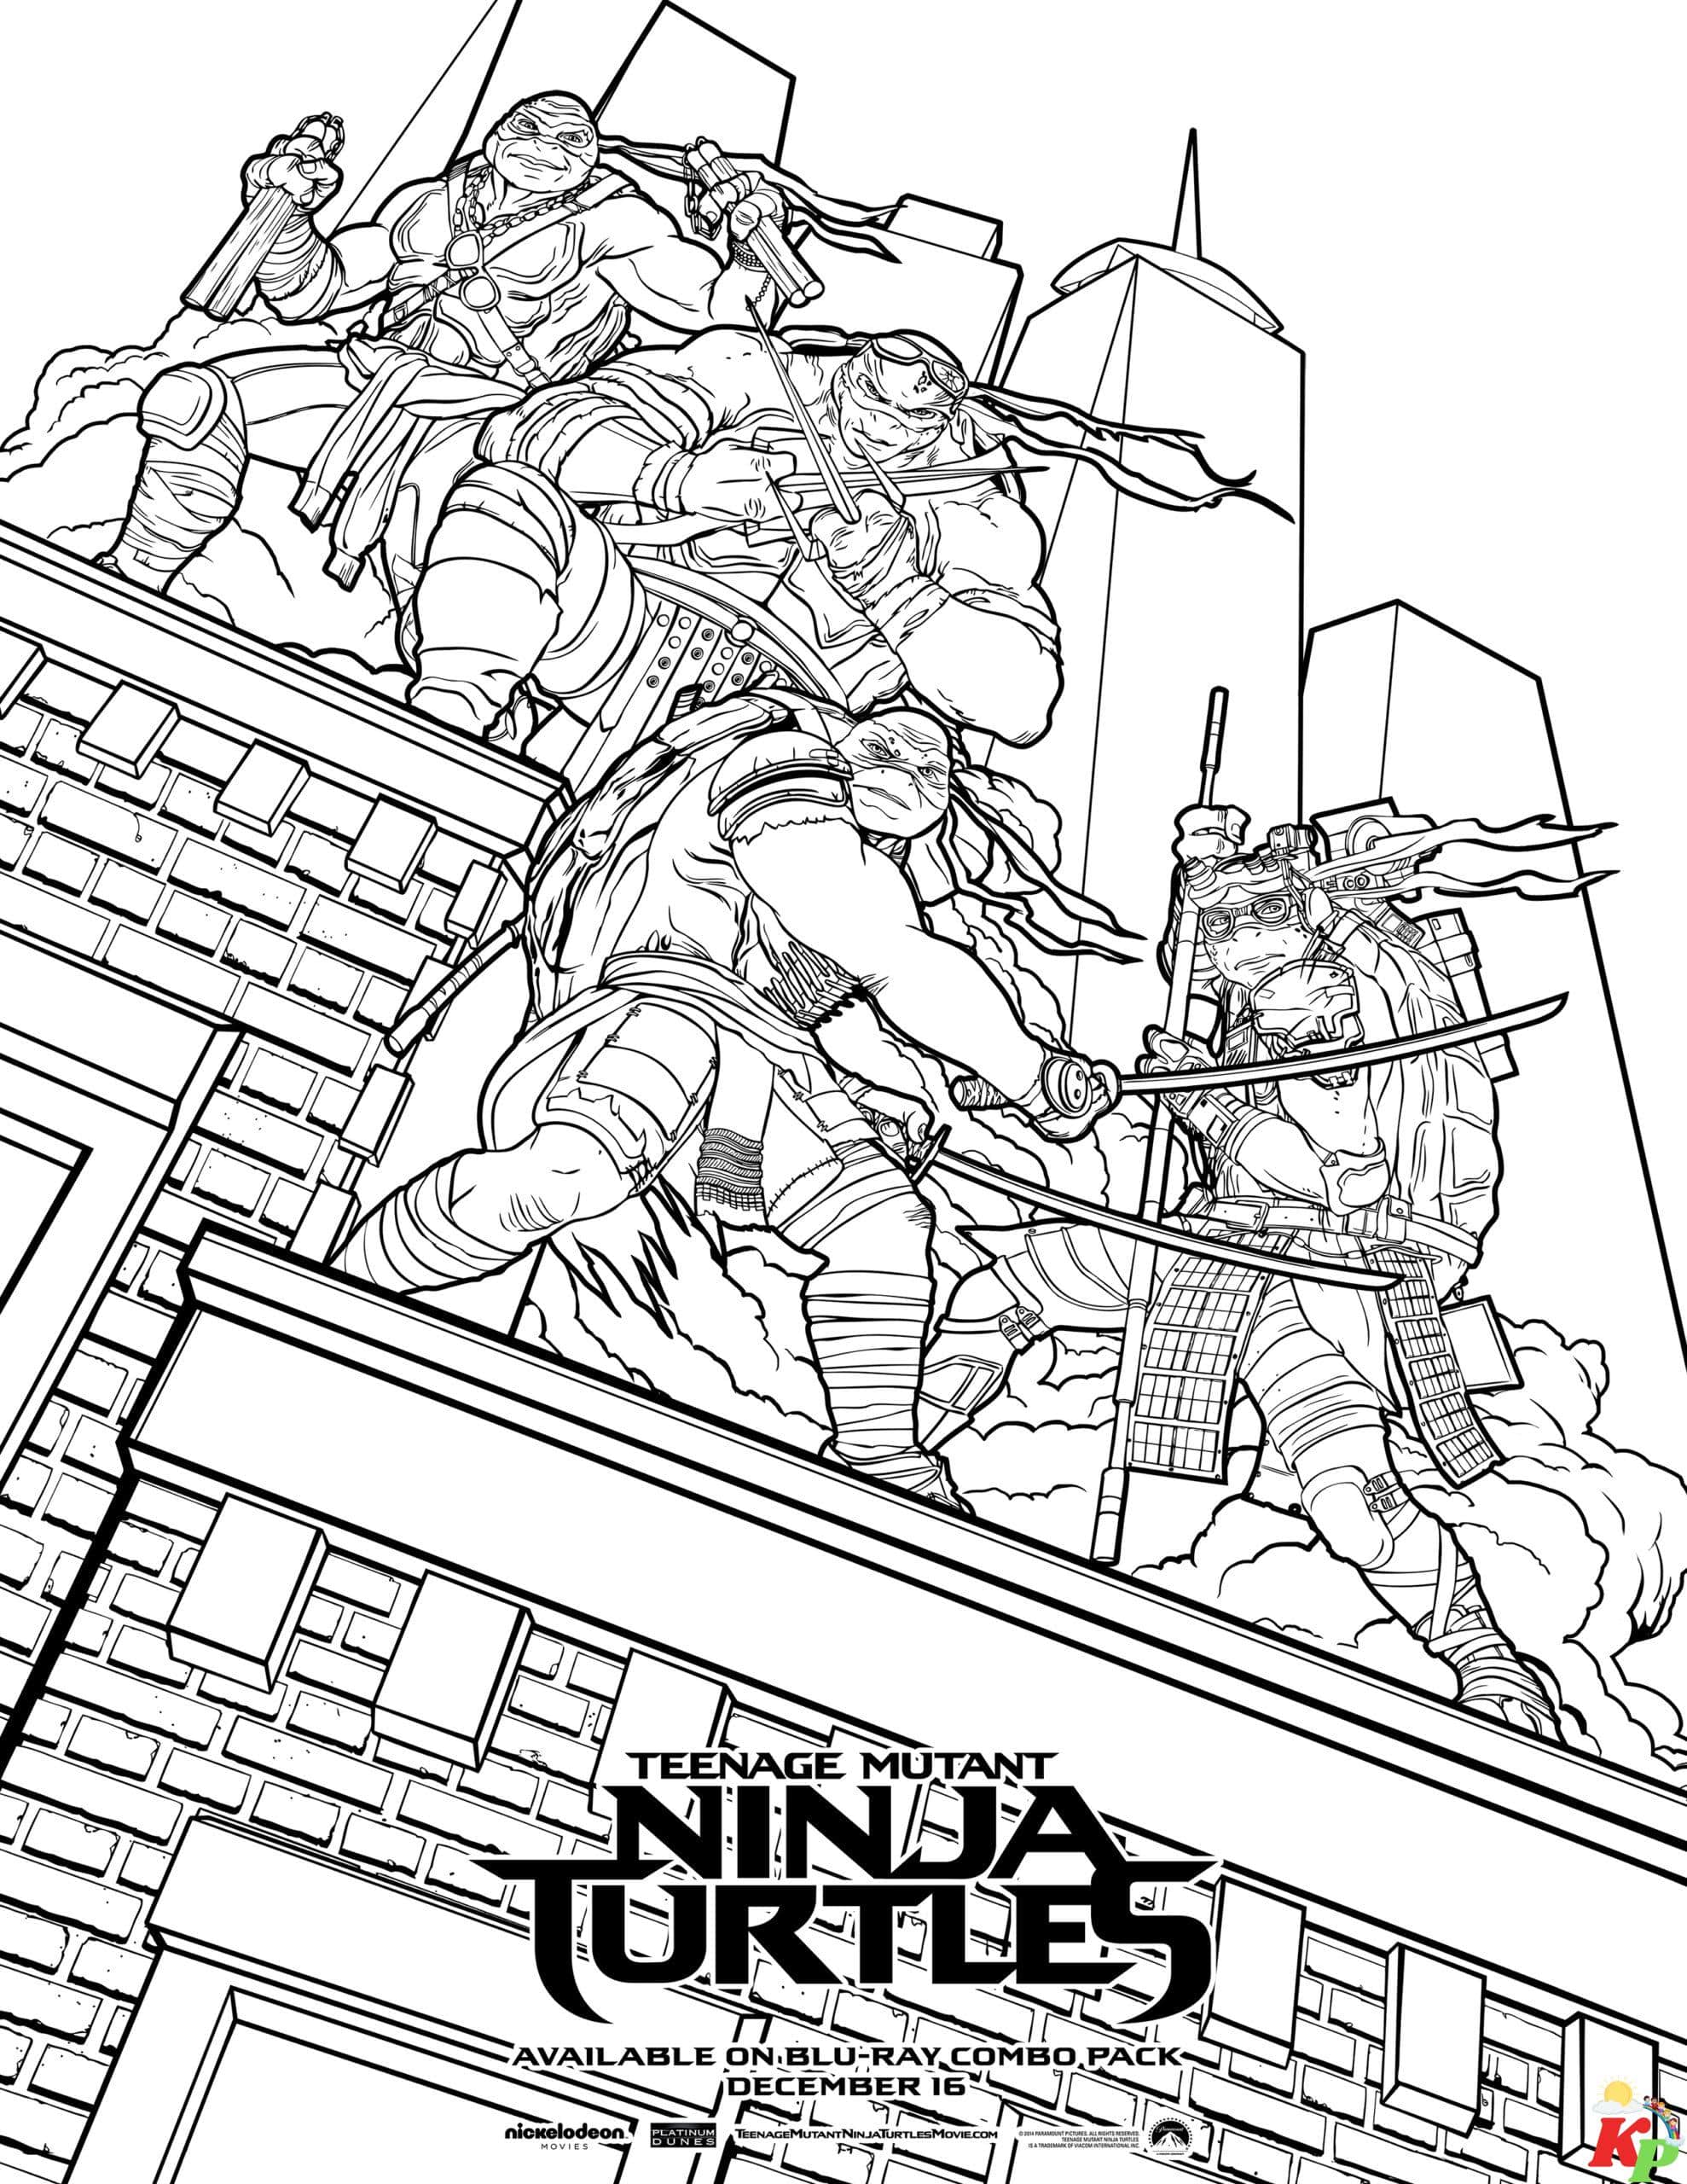 Ninja turtles 6